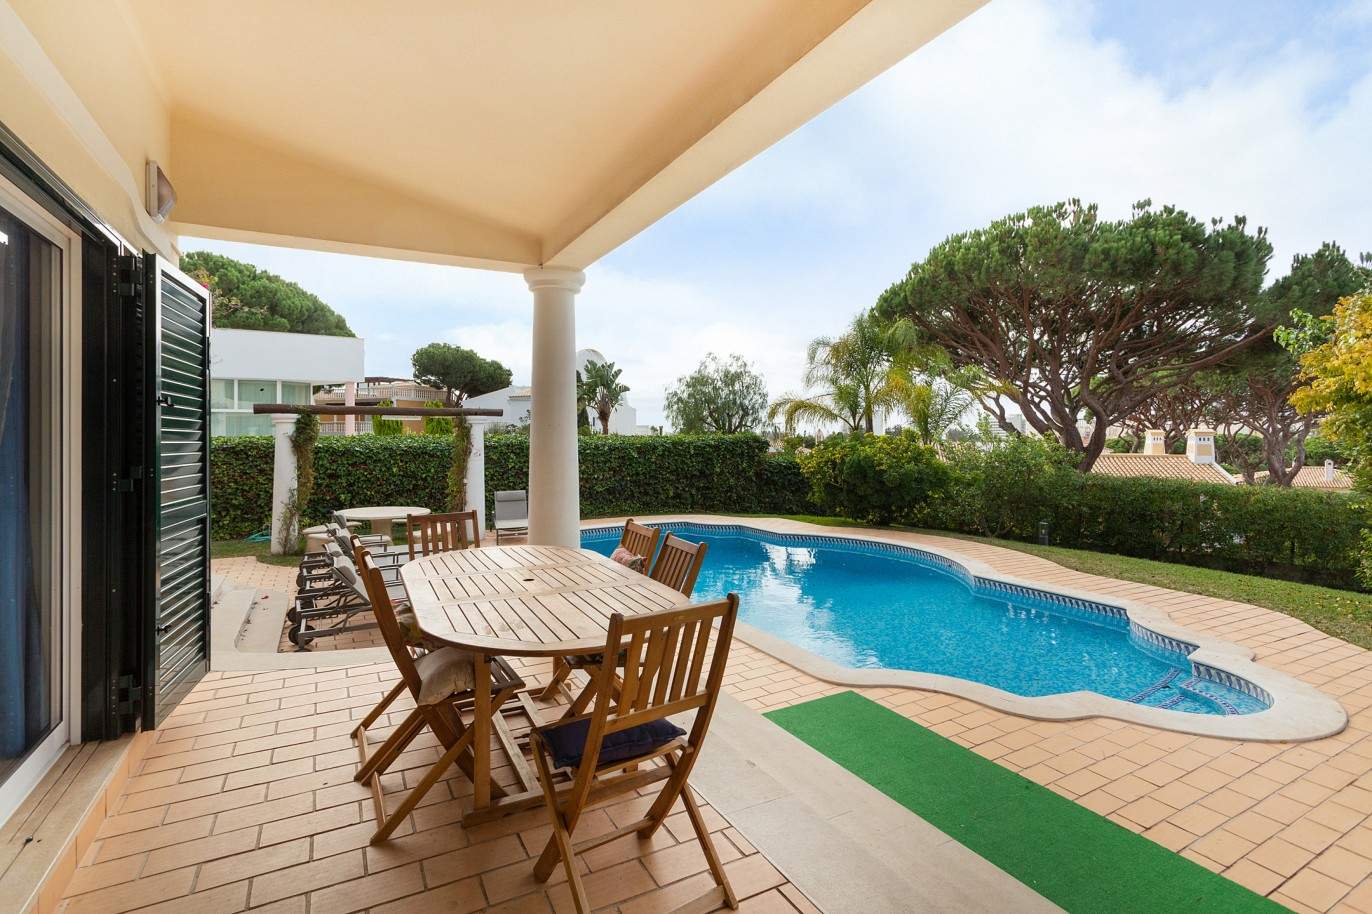 5 Bedroom Villa with swimming pool, for sale in Vilamoura, Algarve_212565